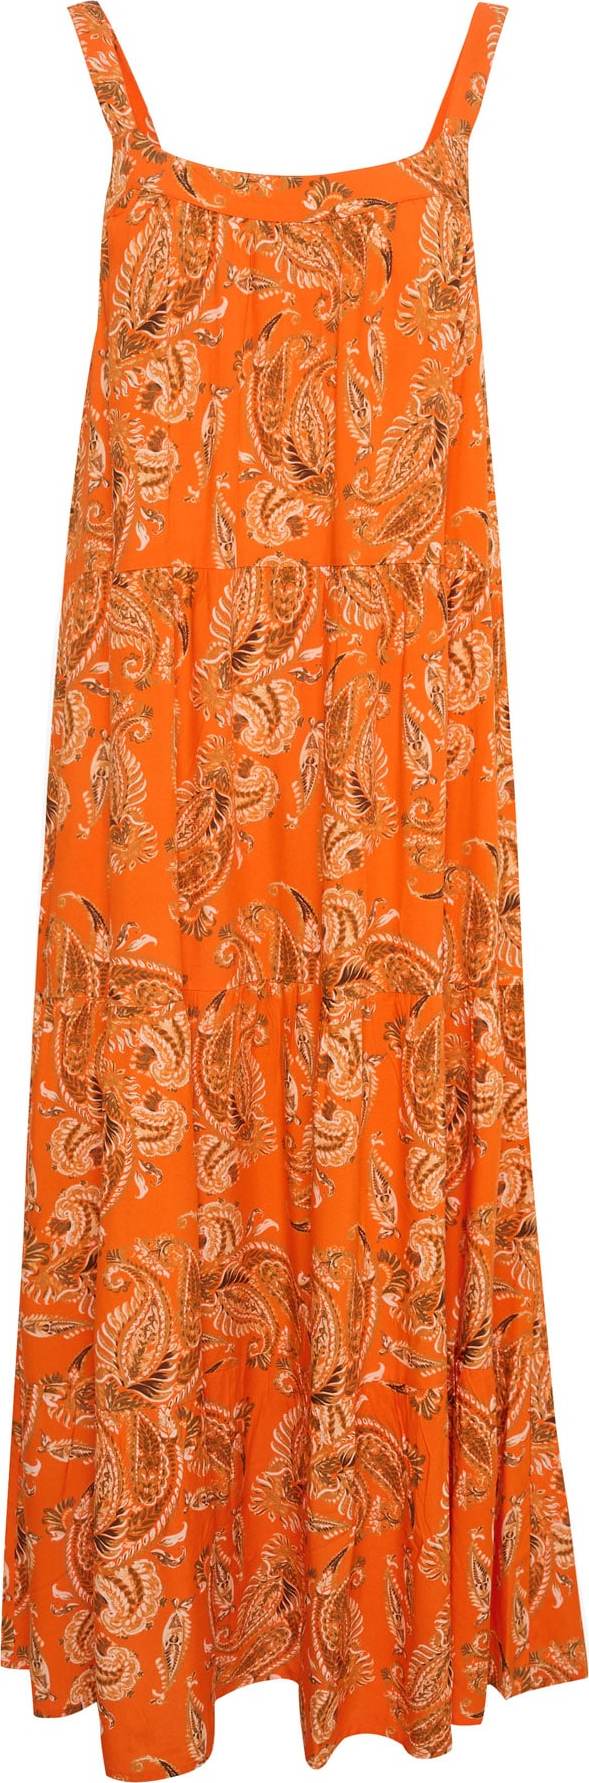 Letní šaty 'Rosina' Cream mix barev / oranžová